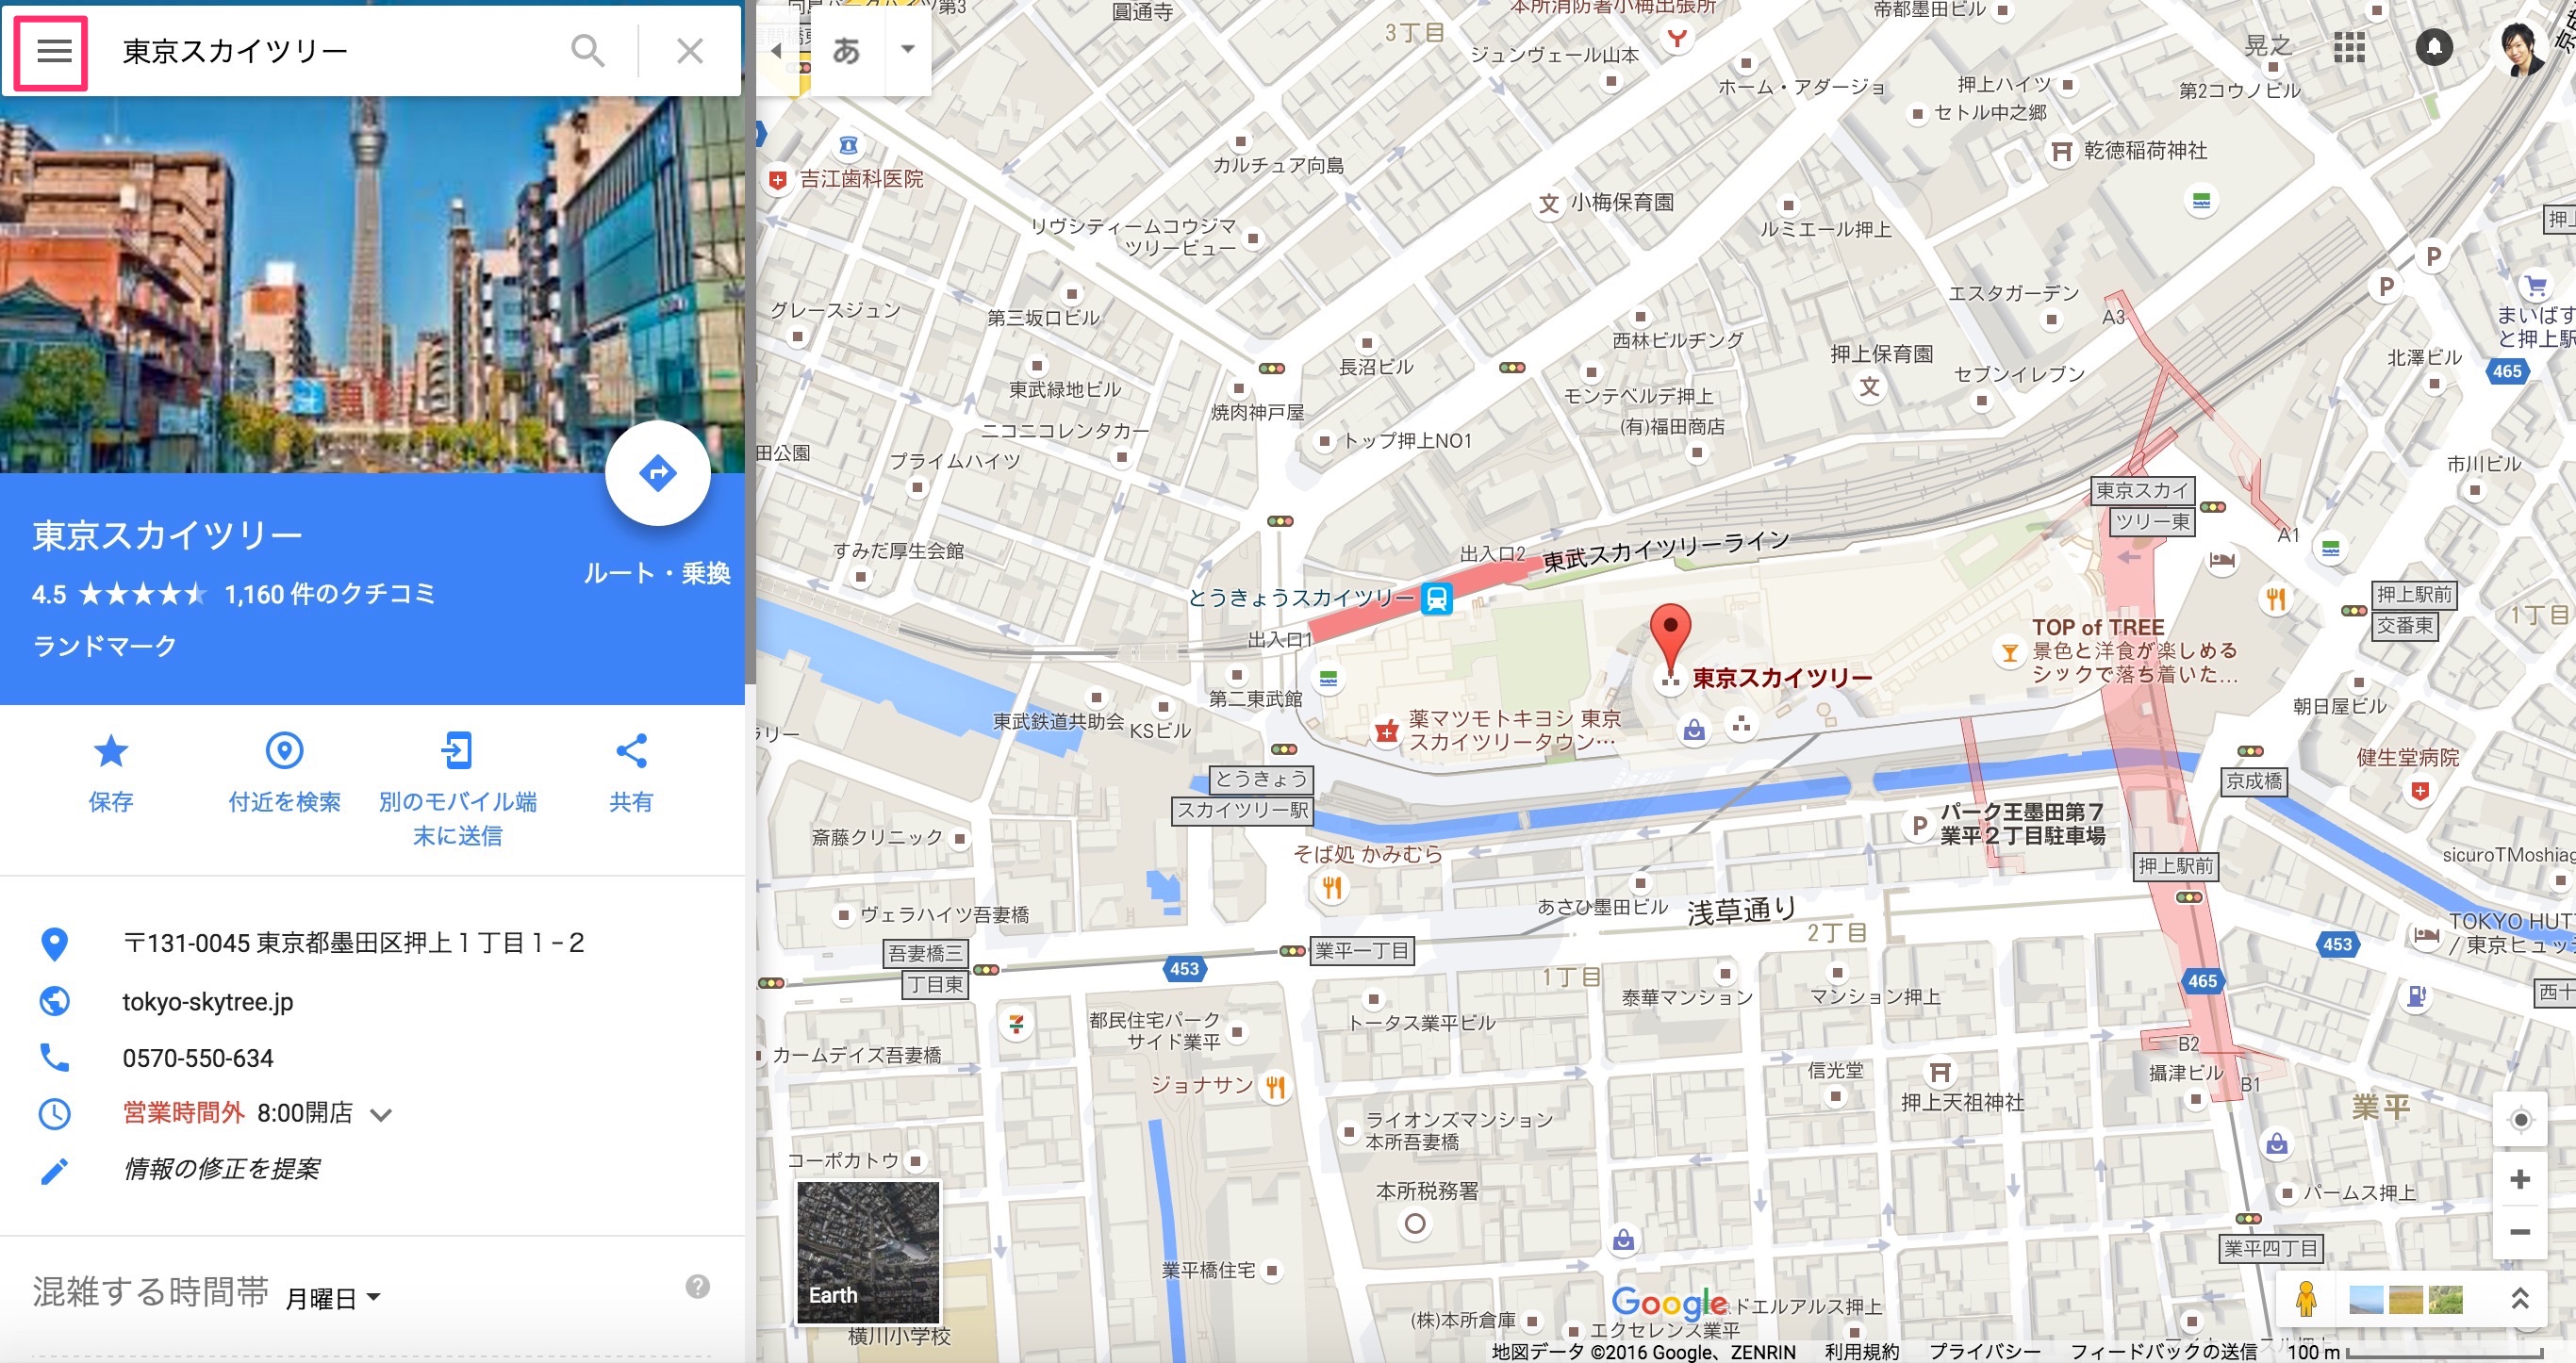 googlemap 埋め込み方法